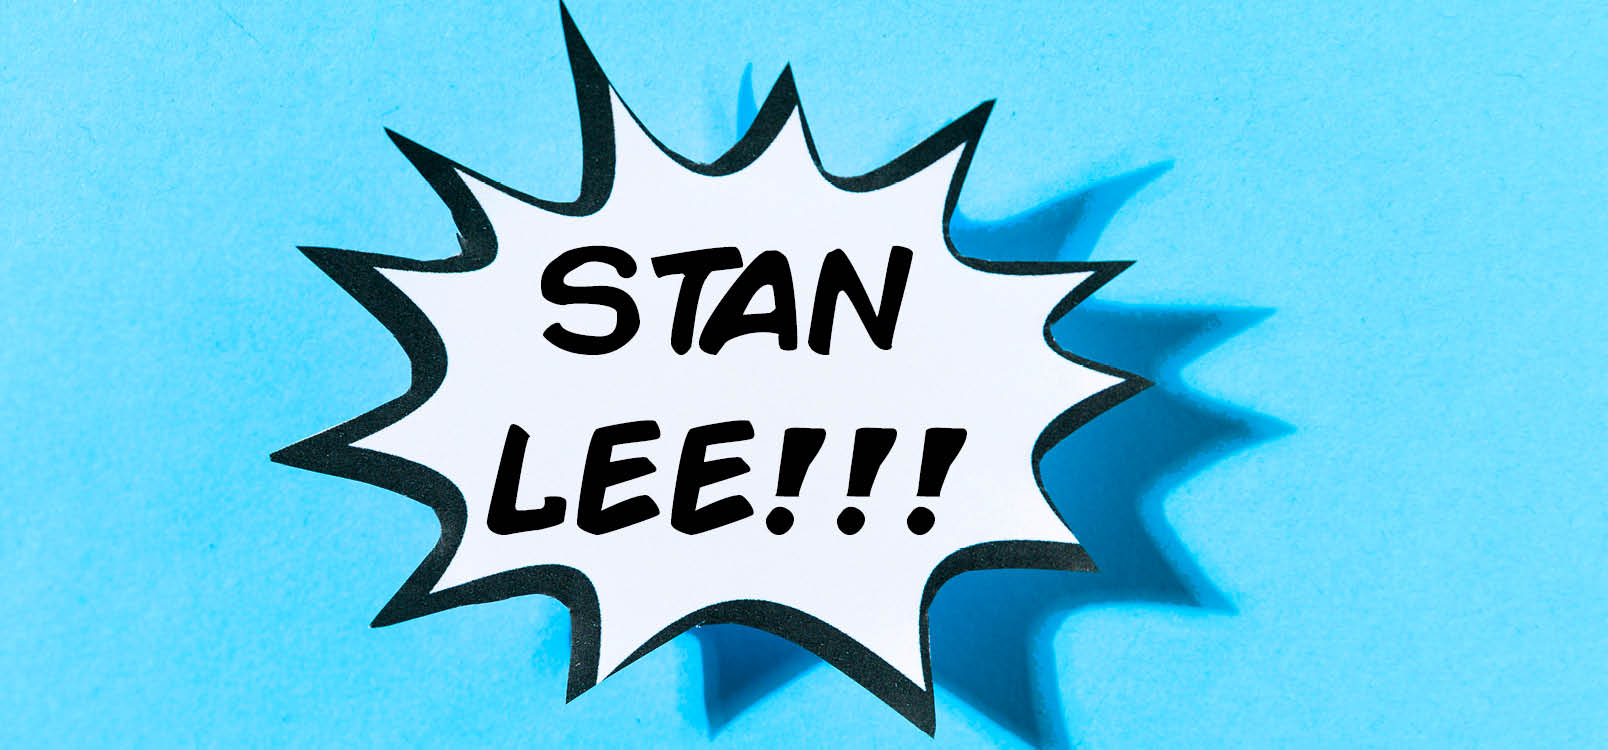 Speech bubble with Stan Lee!!! written in it on a blue background.